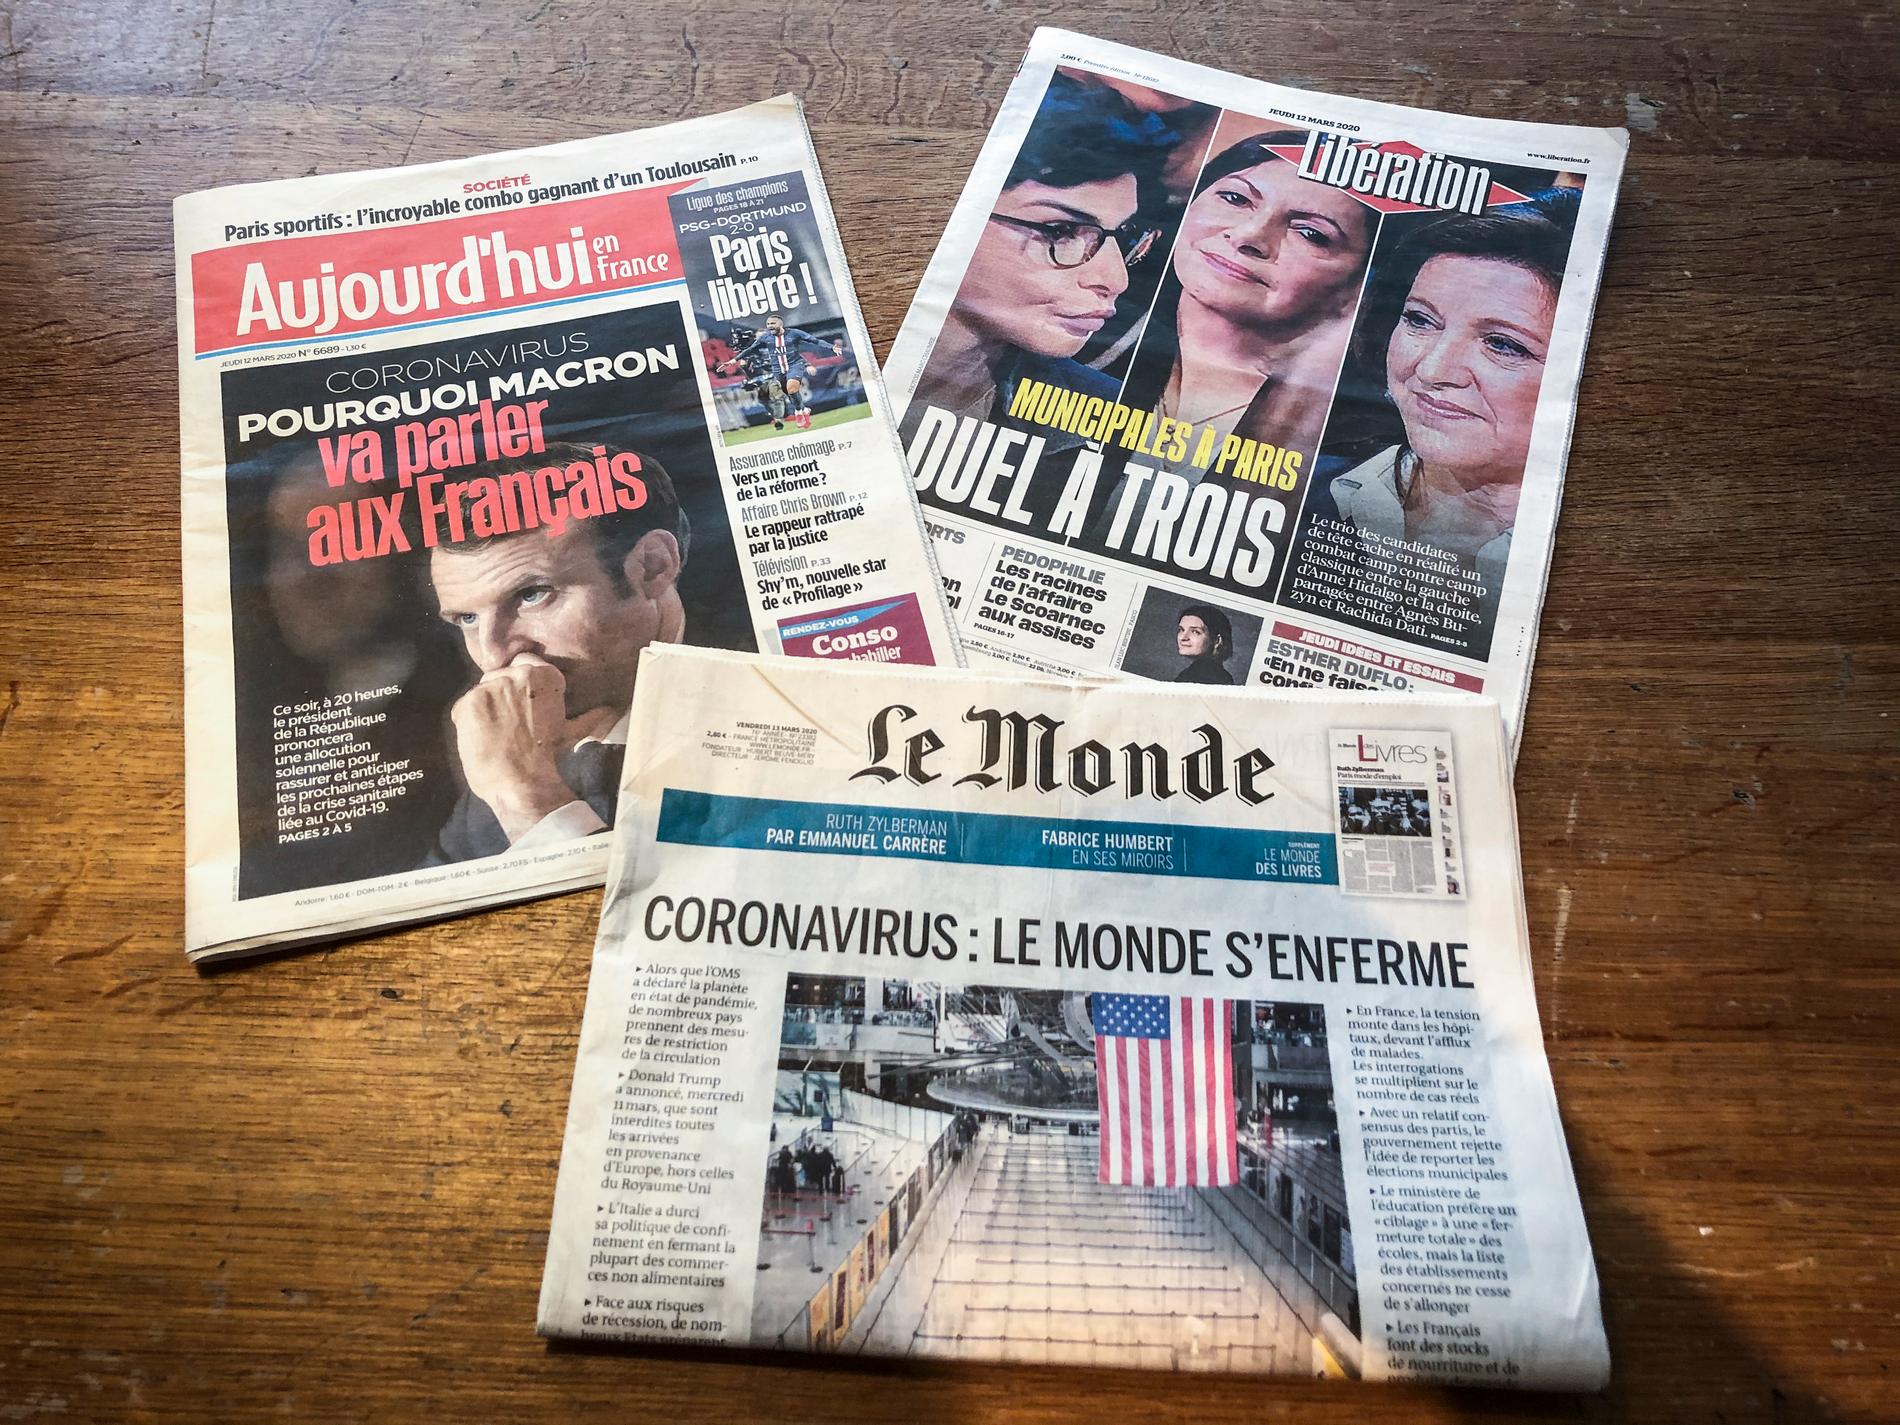 Coronaspridningen och helgens kommunalval dominerar de franska tidningarnas förstasidor.